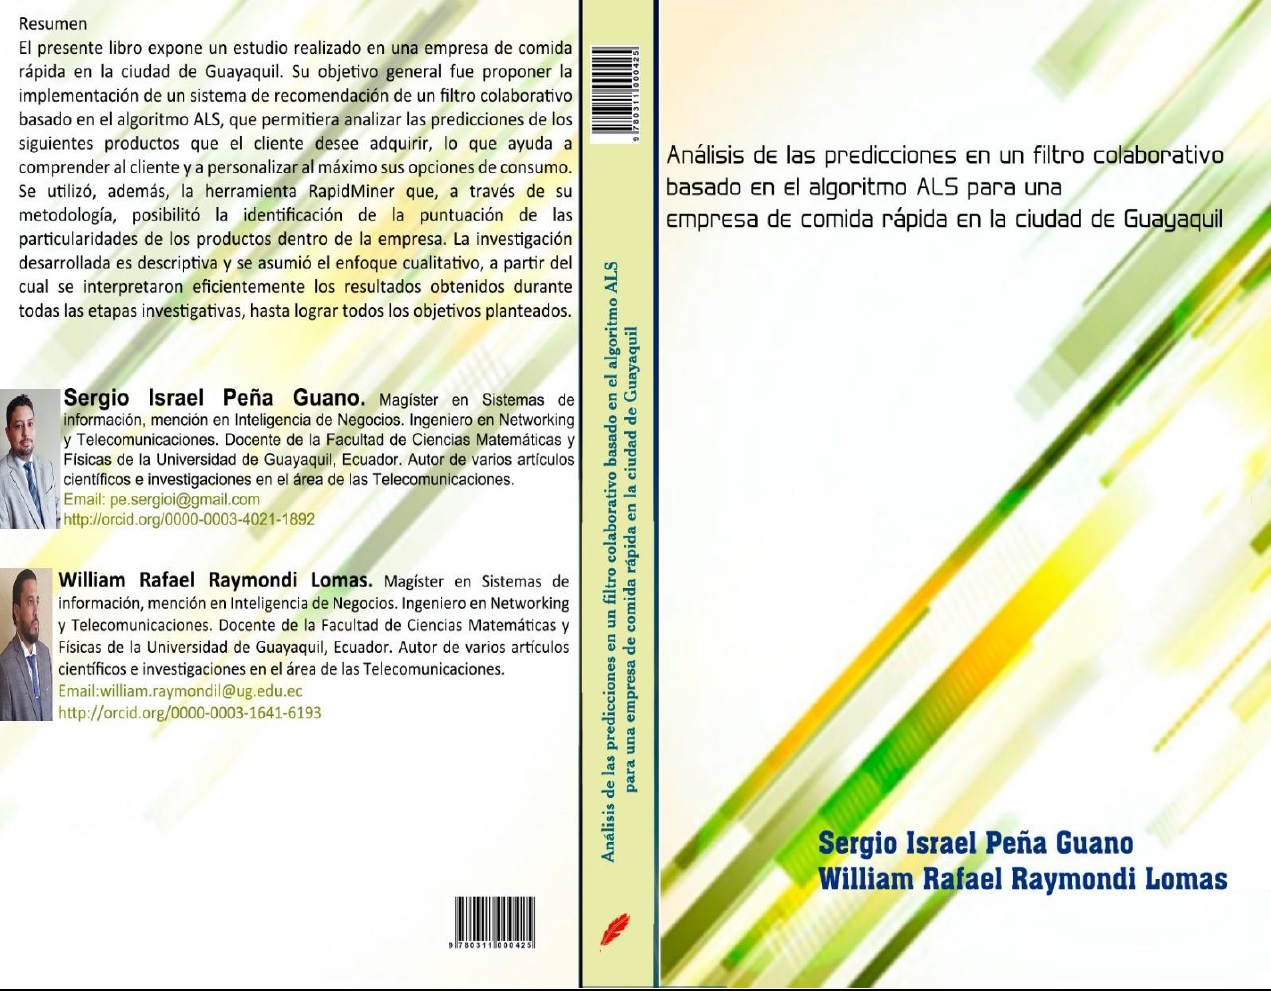 Imagen de portada del libro Análisis de las predicciones en un filtro colaborativo basado en el algoritmo ALS para una empresa de comida rápida en la ciudad de Guayaquil